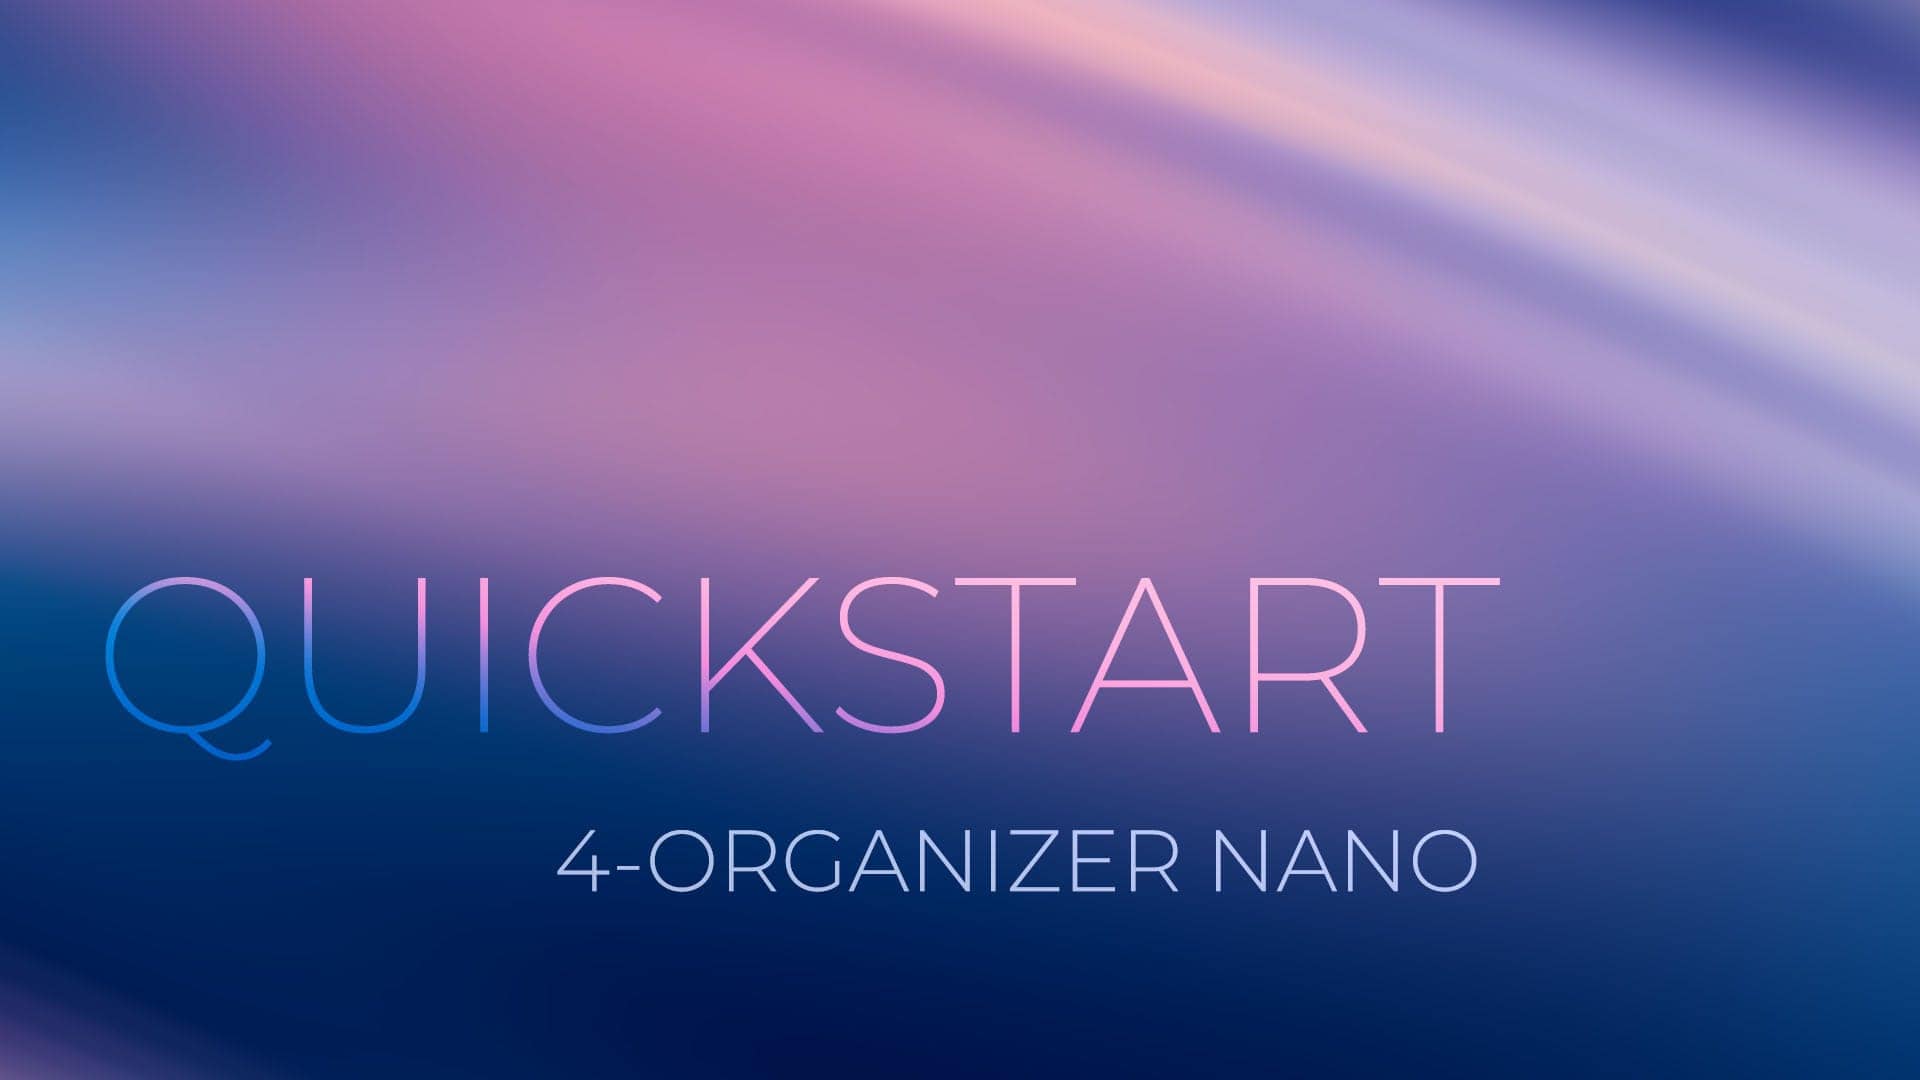 The Quick Start Guide for 4-Organizer Nano